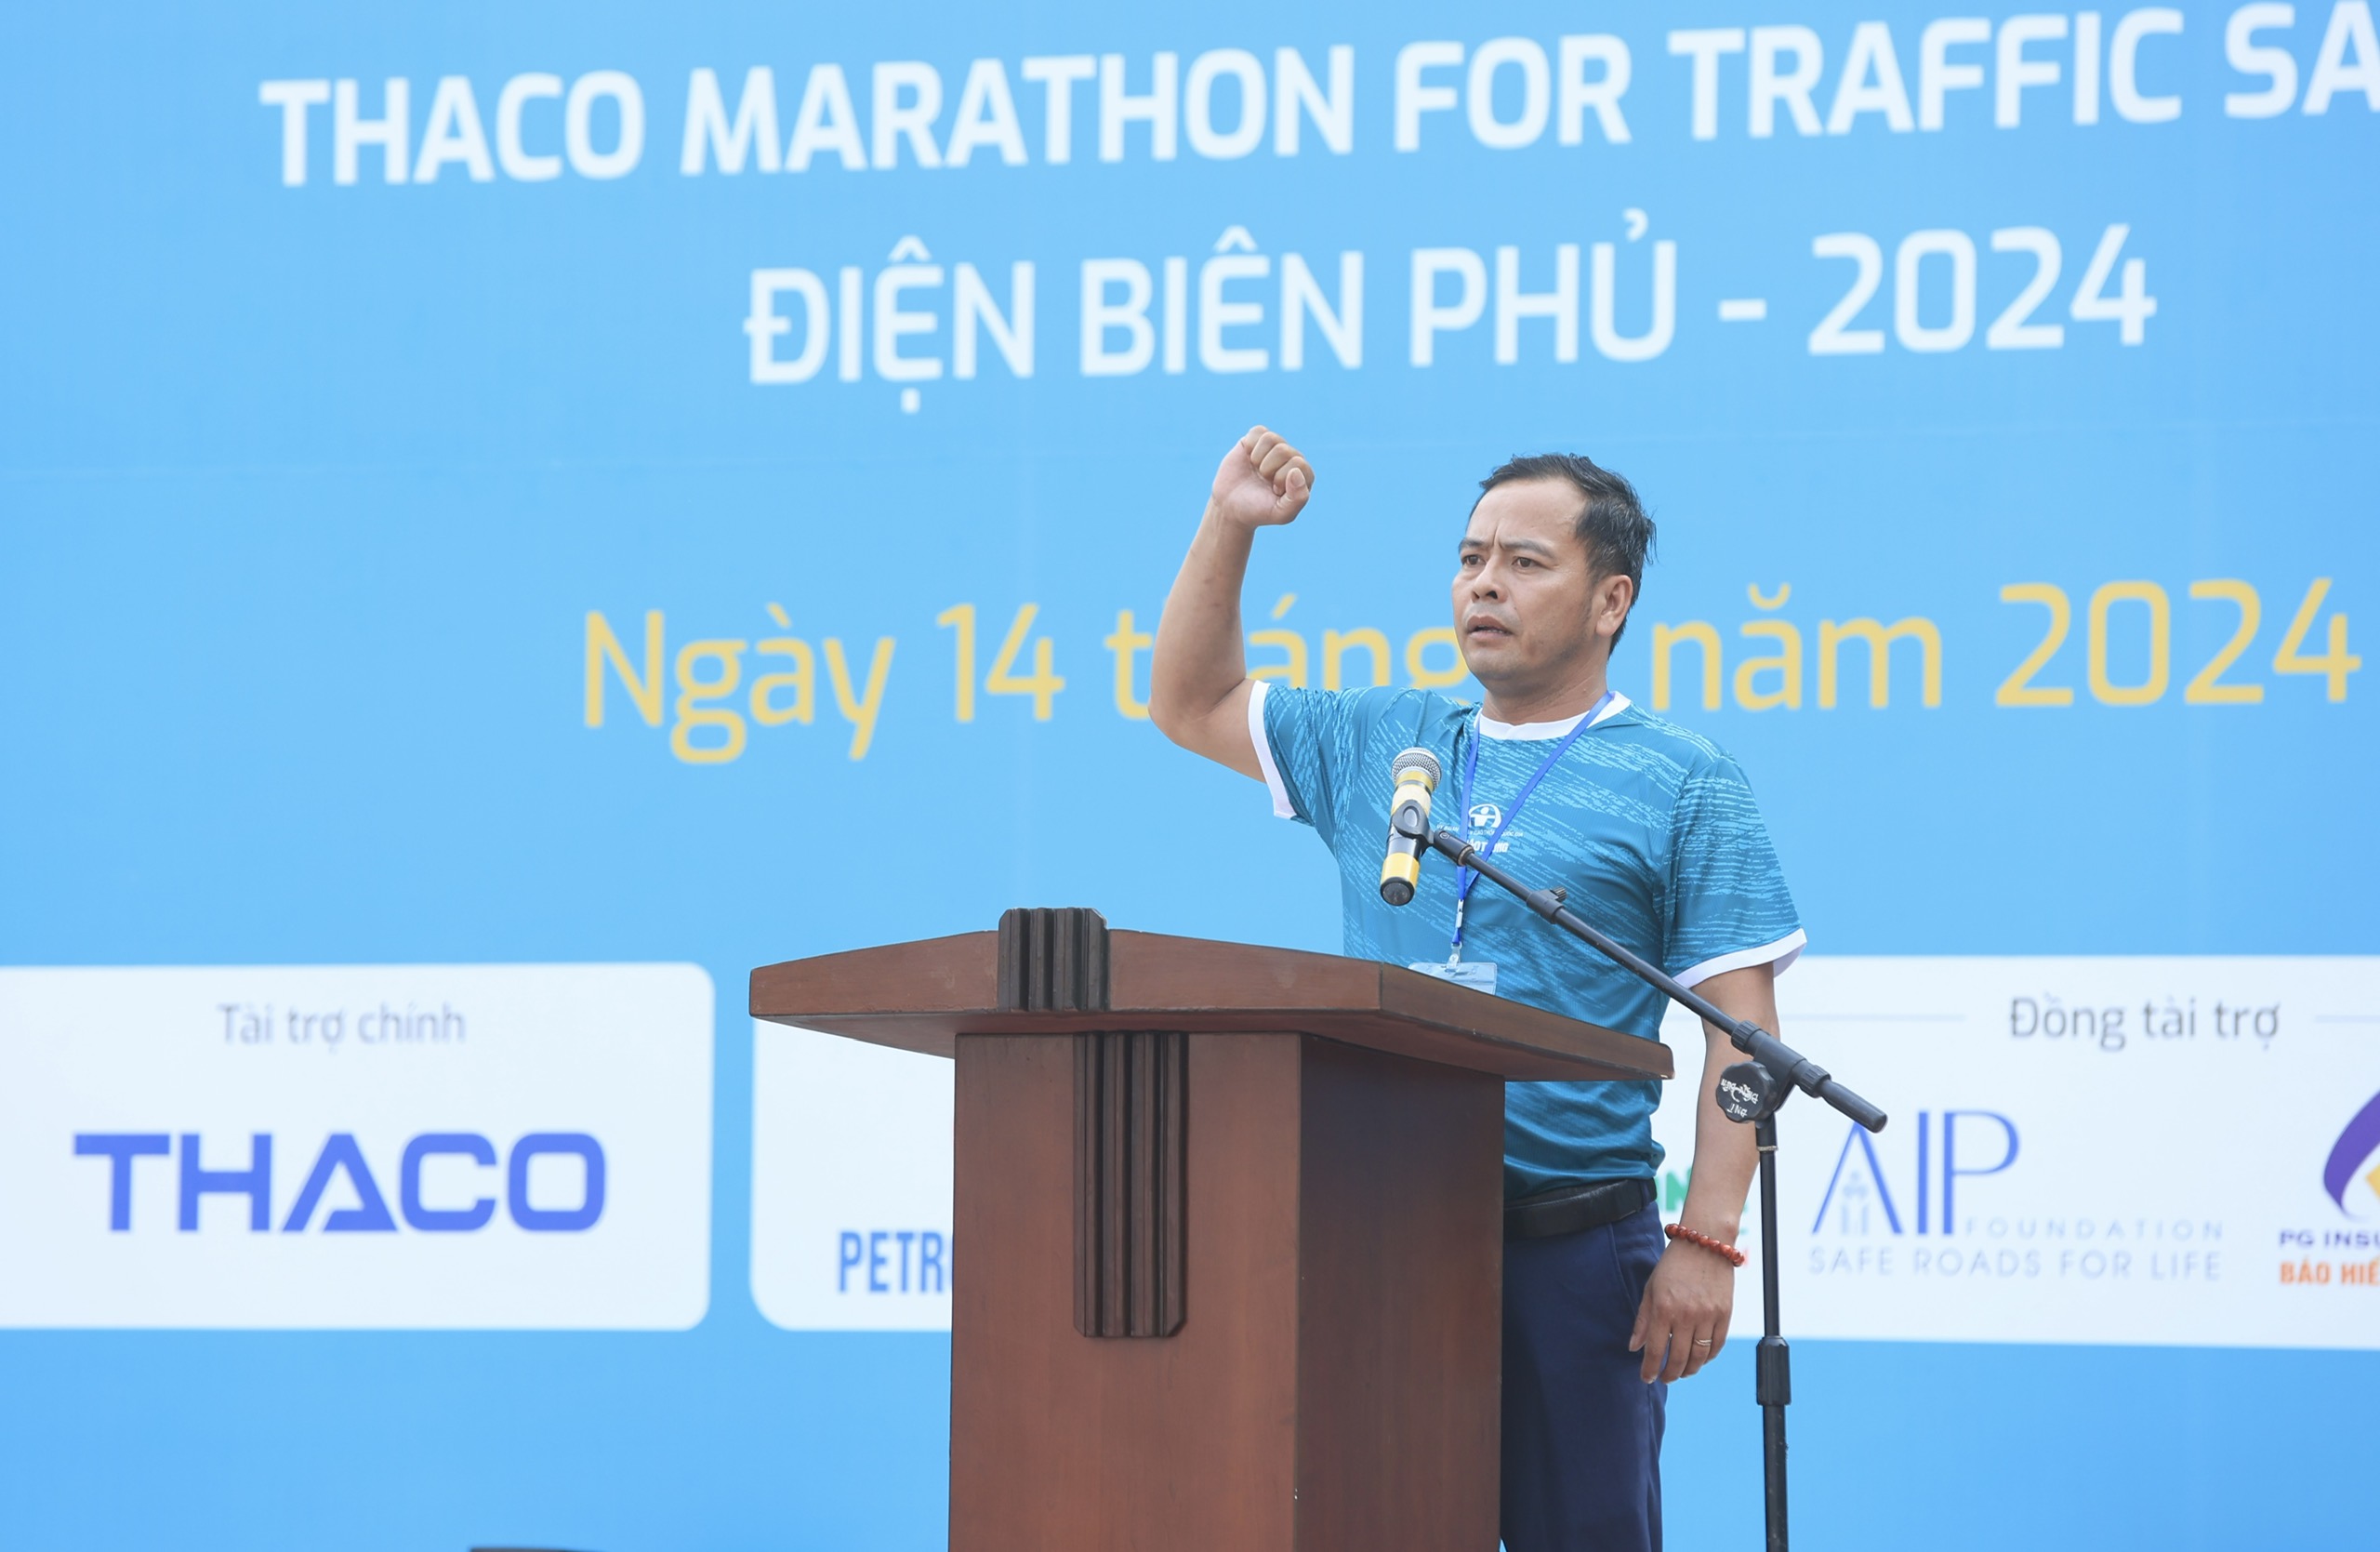 Trực tiếp: Giải THACO Marathon vì ATGT - Điện Biên Phủ 2024 thành công rực rỡ- Ảnh 31.